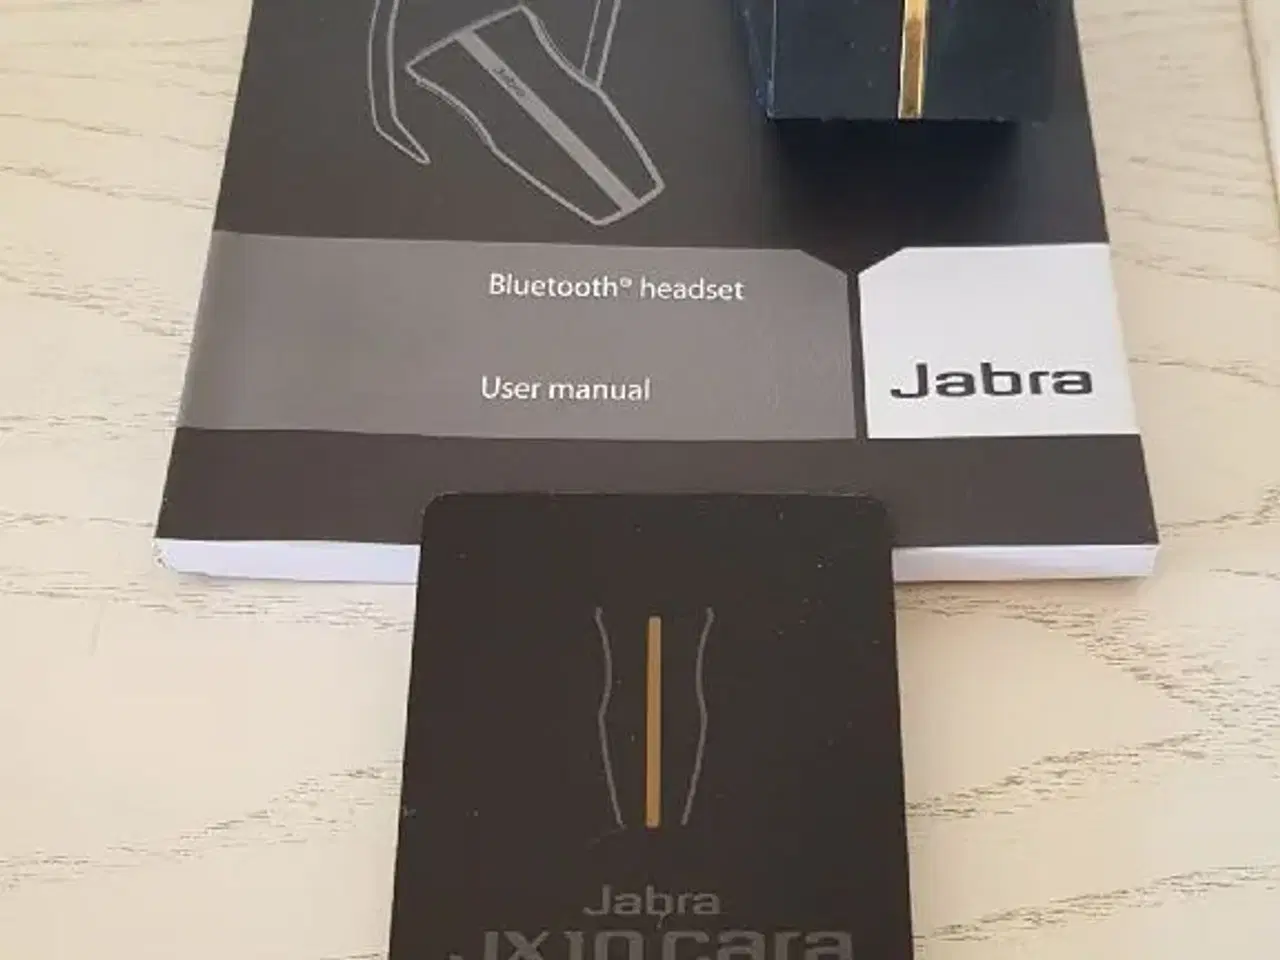 Billede 4 - Jabra JX10 Cara headset